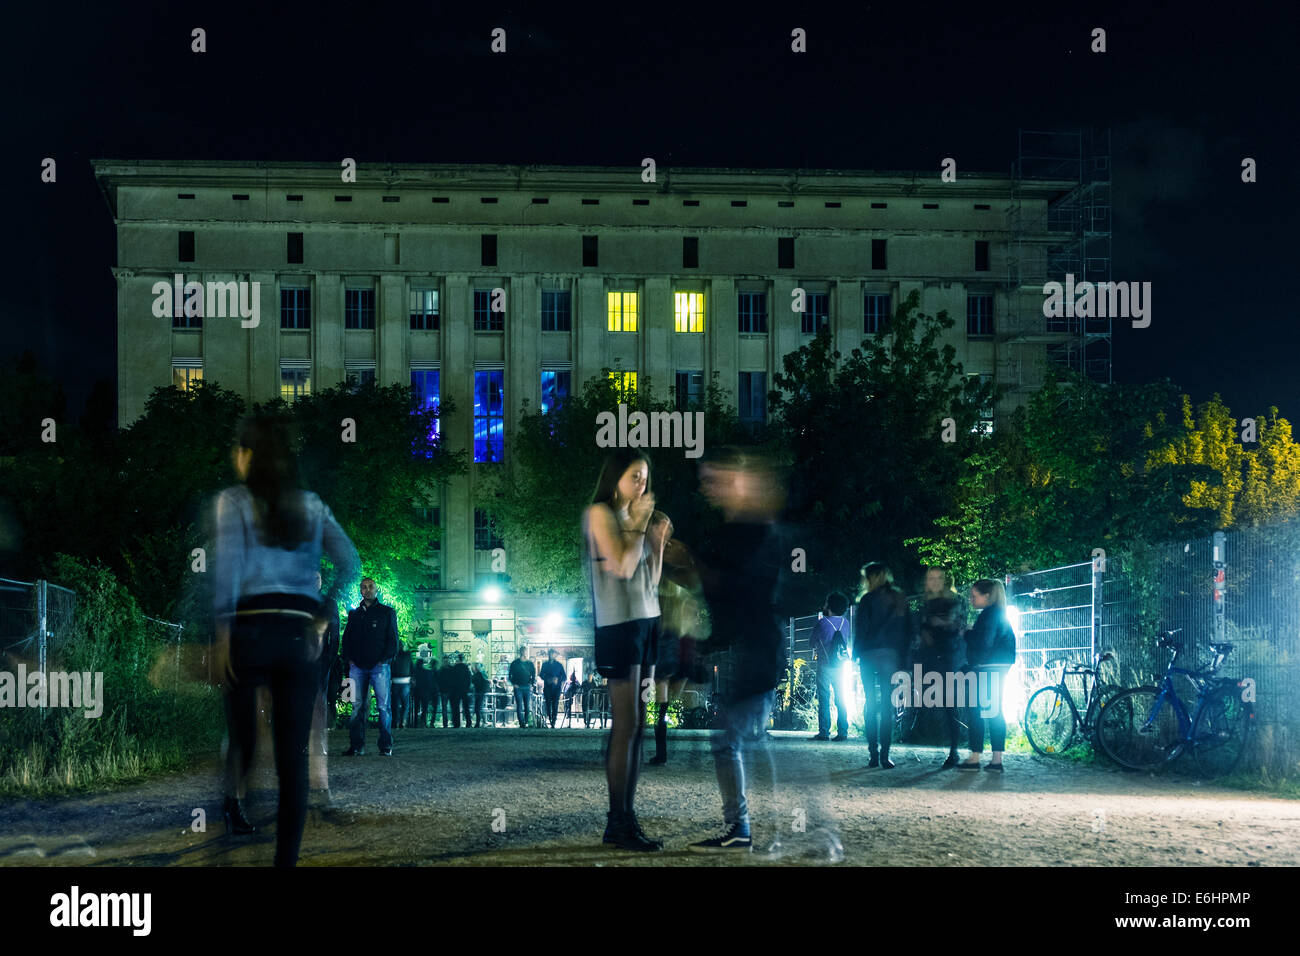 Vue de nuit de personnes attendant à l'extérieur entrée de discothèque Berghain à Friedrichshain Berlin Allemagne Banque D'Images